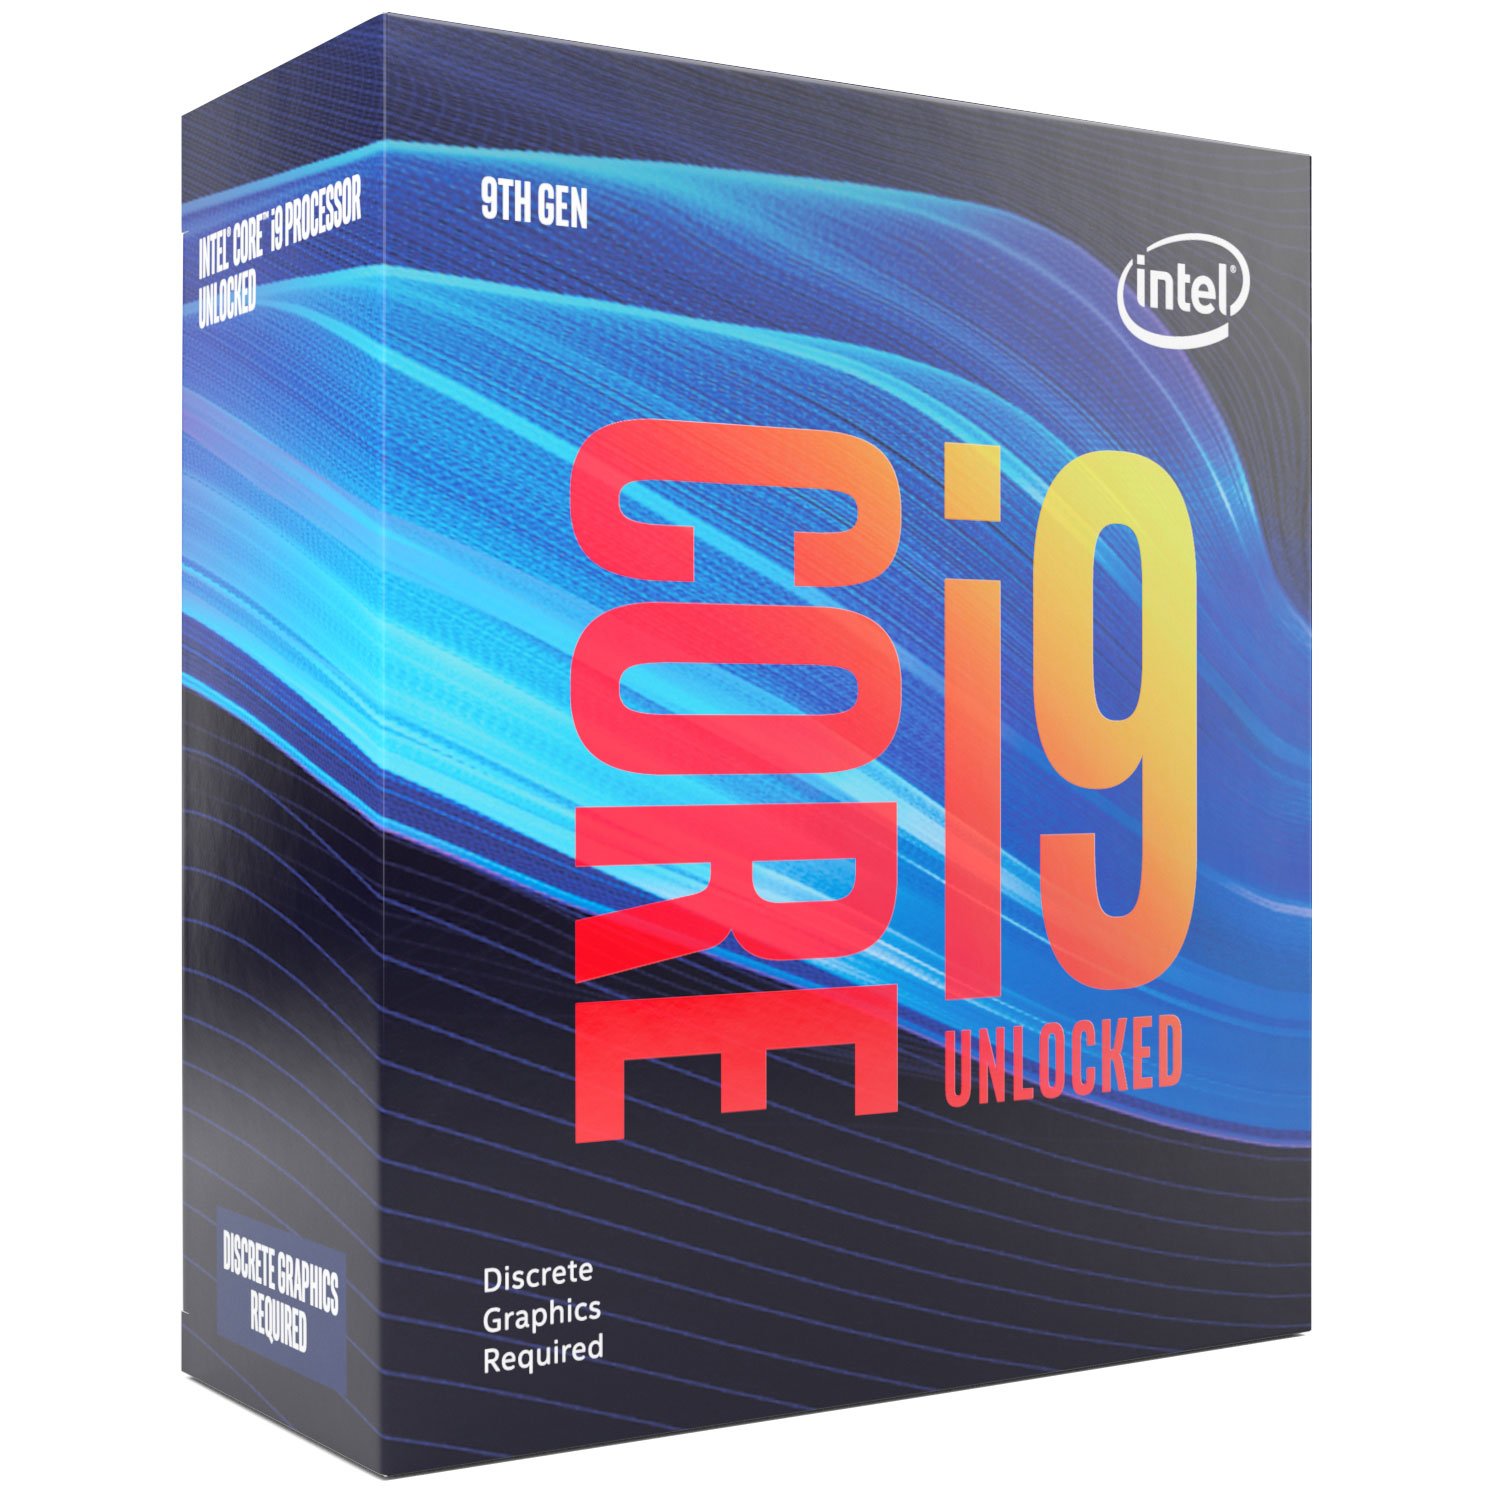 Le i9-9900KF d'Intel avec le iGPU désactivé